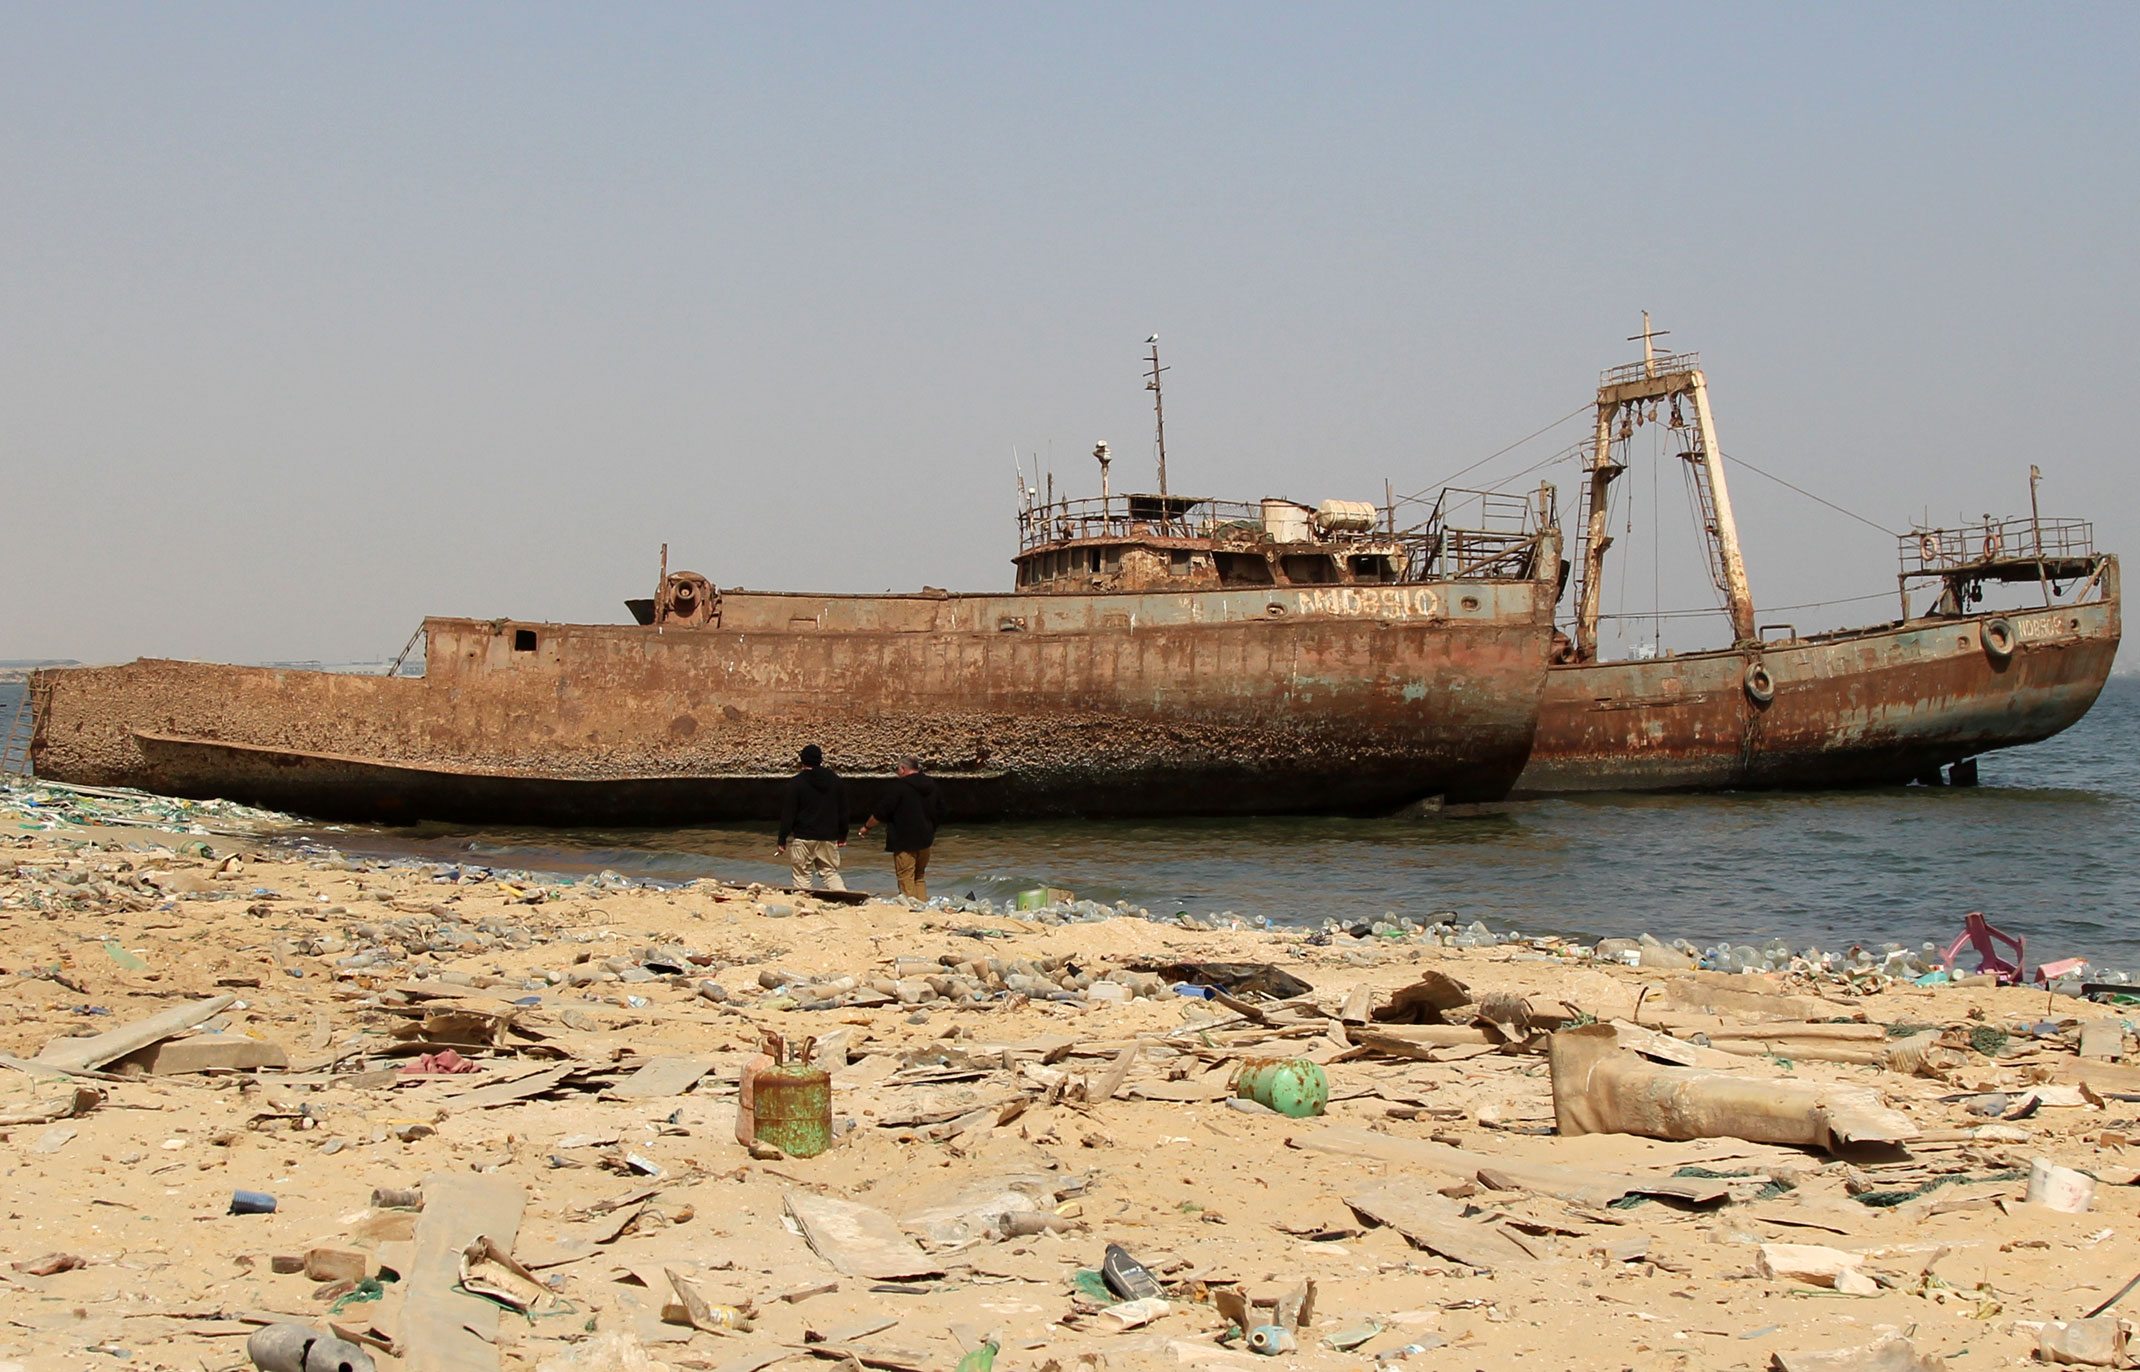 Mauretania.Cmentarzysko statków czyli zatoka wraków